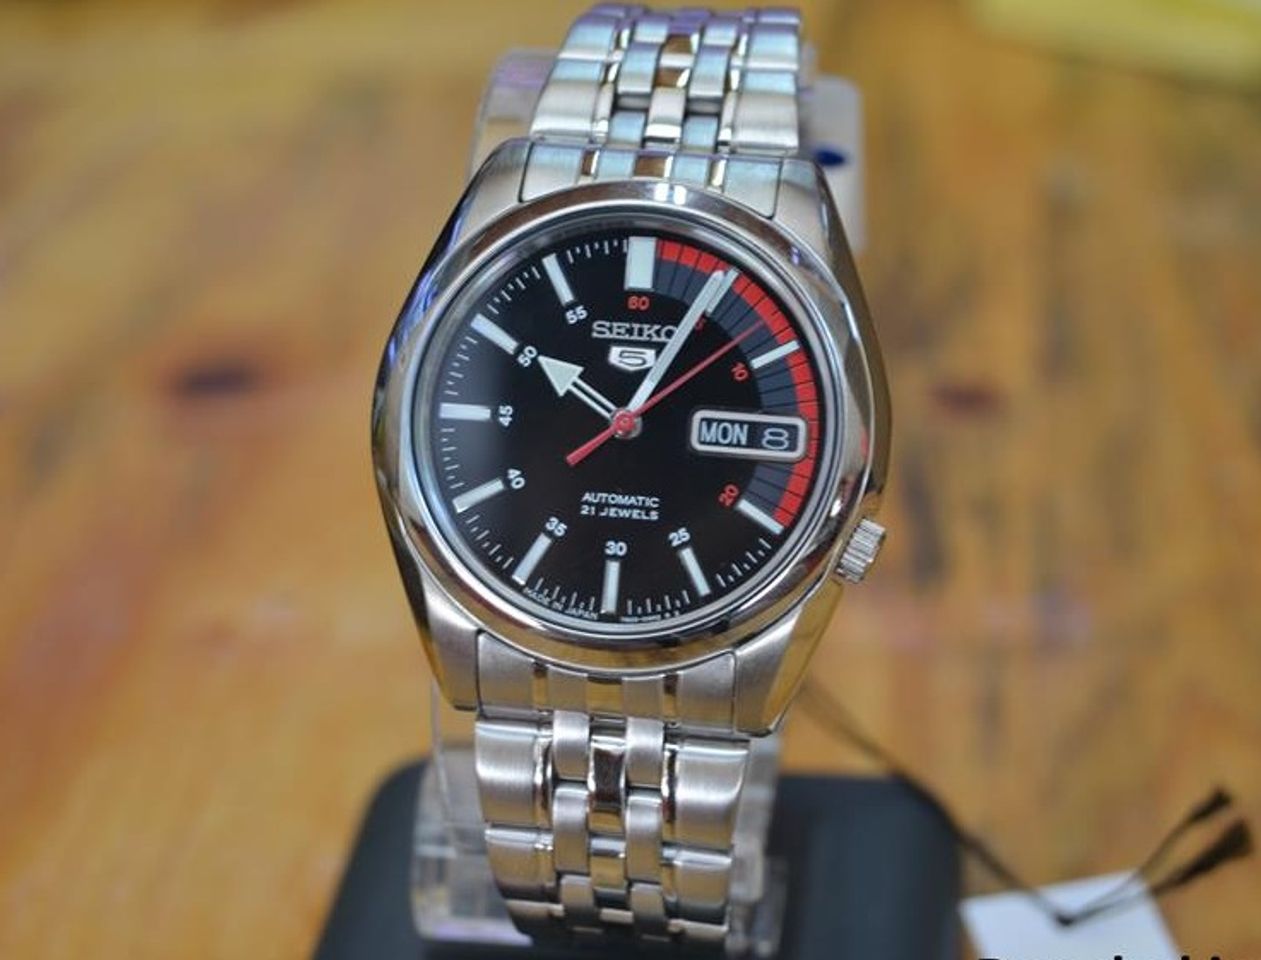 Chiếc đồng hồ Seiko này sử dụng bộ máy 7S26, 21 chân kính bền bỉ và chính xác